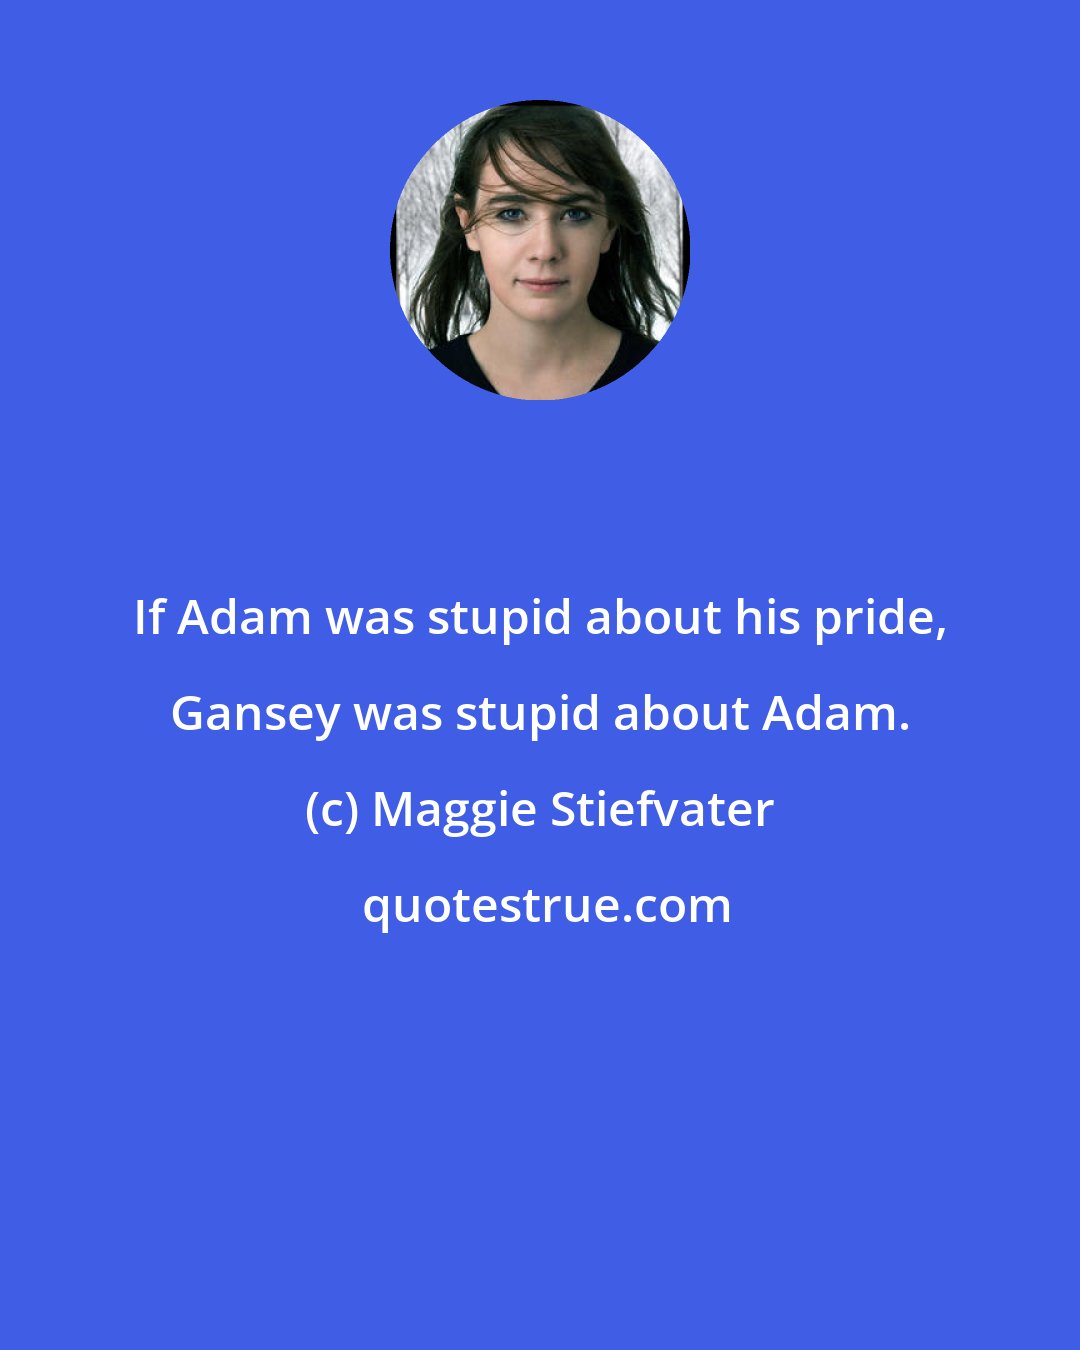 Maggie Stiefvater: If Adam was stupid about his pride, Gansey was stupid about Adam.